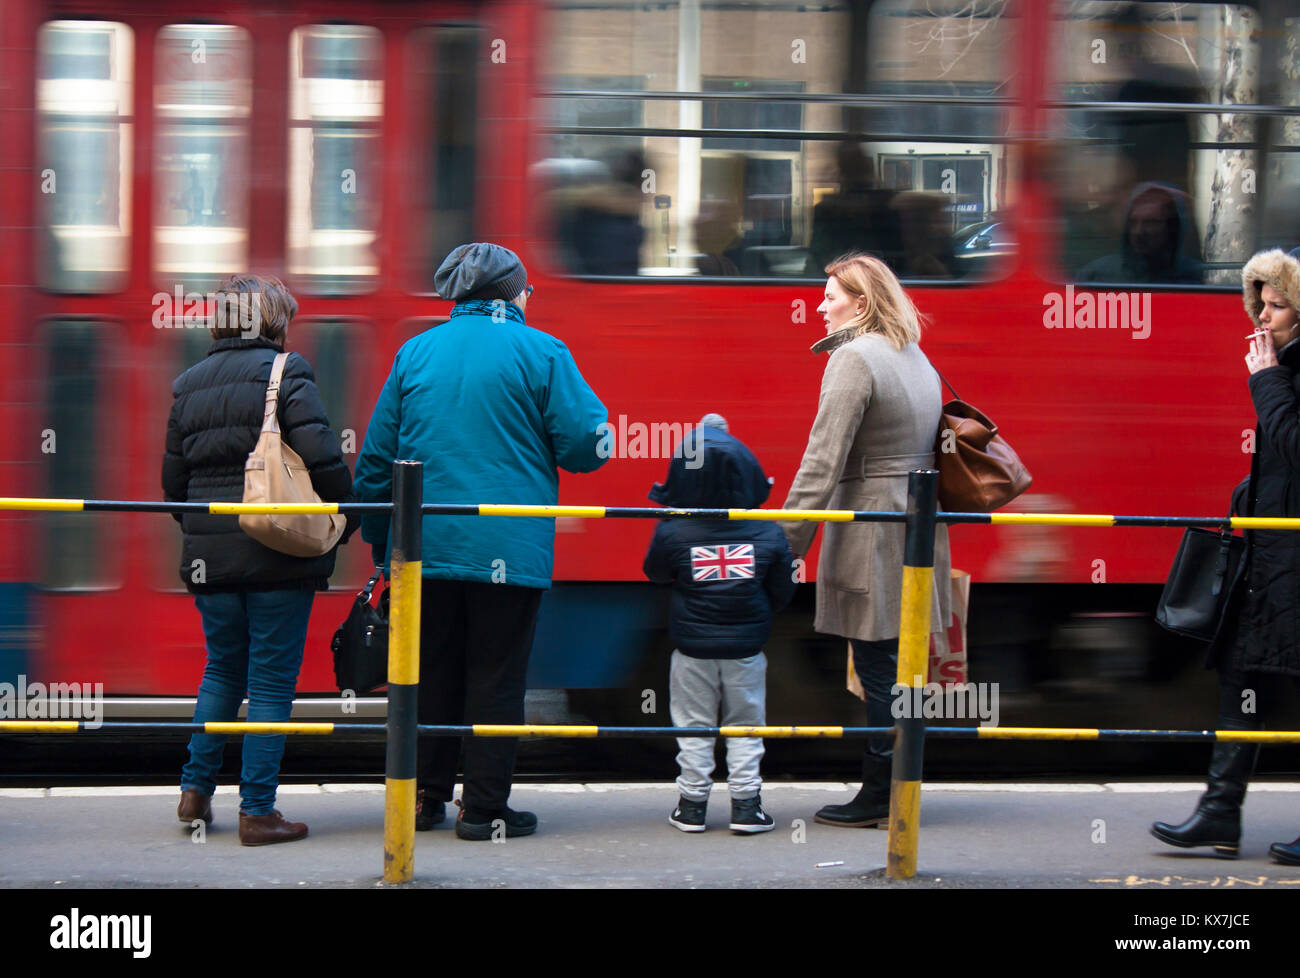 Belgrad, Serbien - November 29, 2016: vier Frauen und ein Kind warten auf die Straßenbahn an einem kalten und windigen Tag Stockfoto